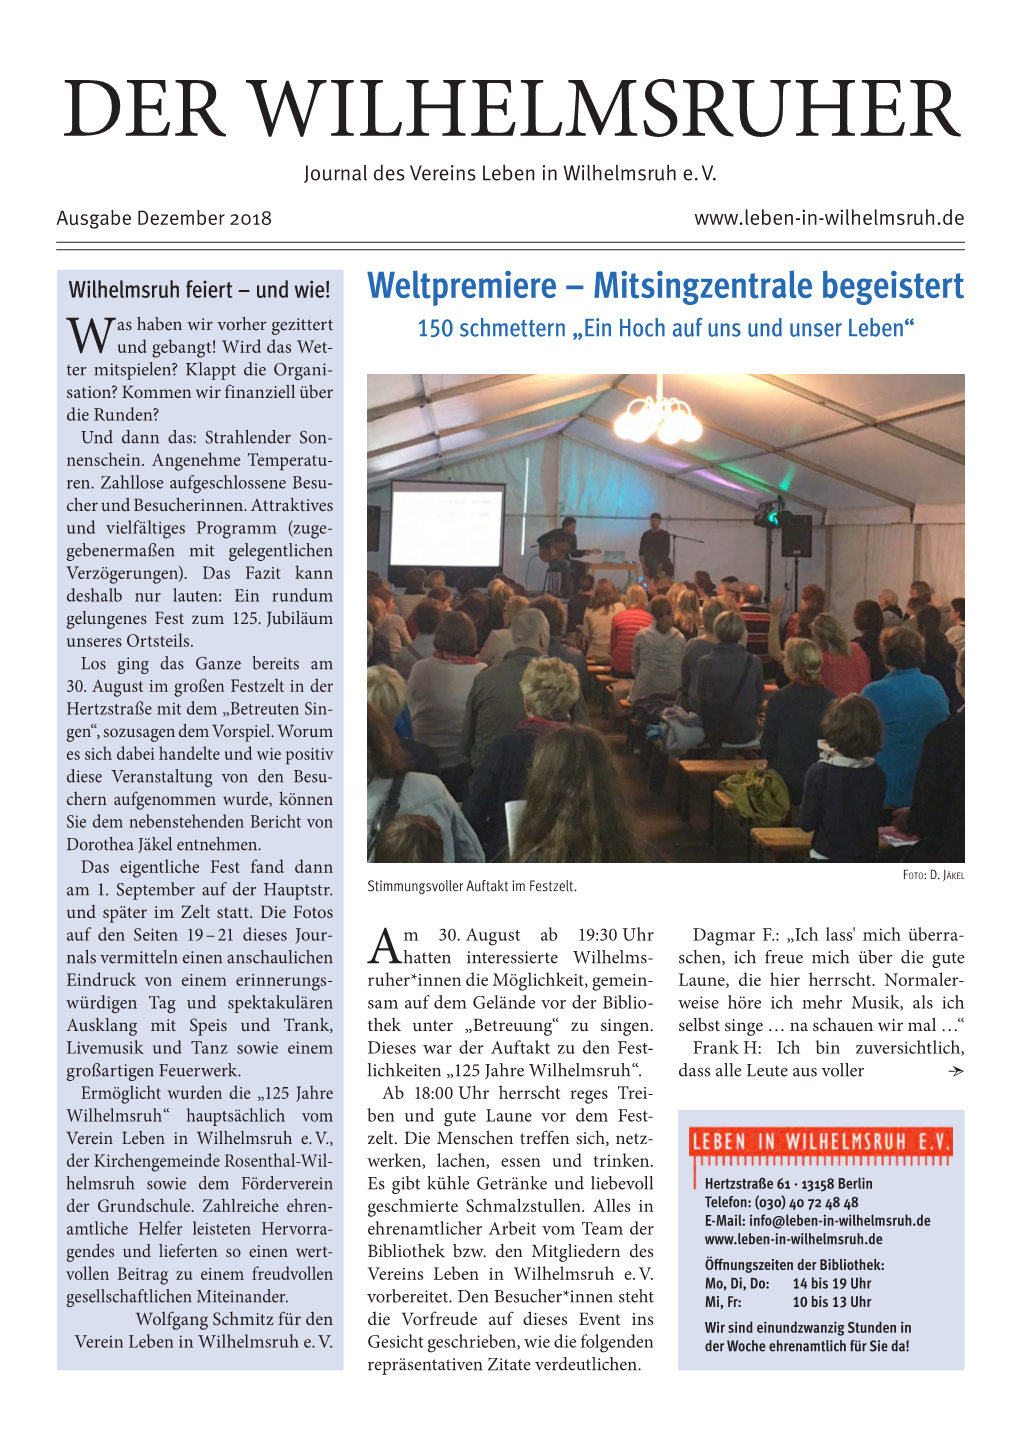 DER WILHELMSRUHER Journal Des Vereins Leben in Wilhelmsruh E